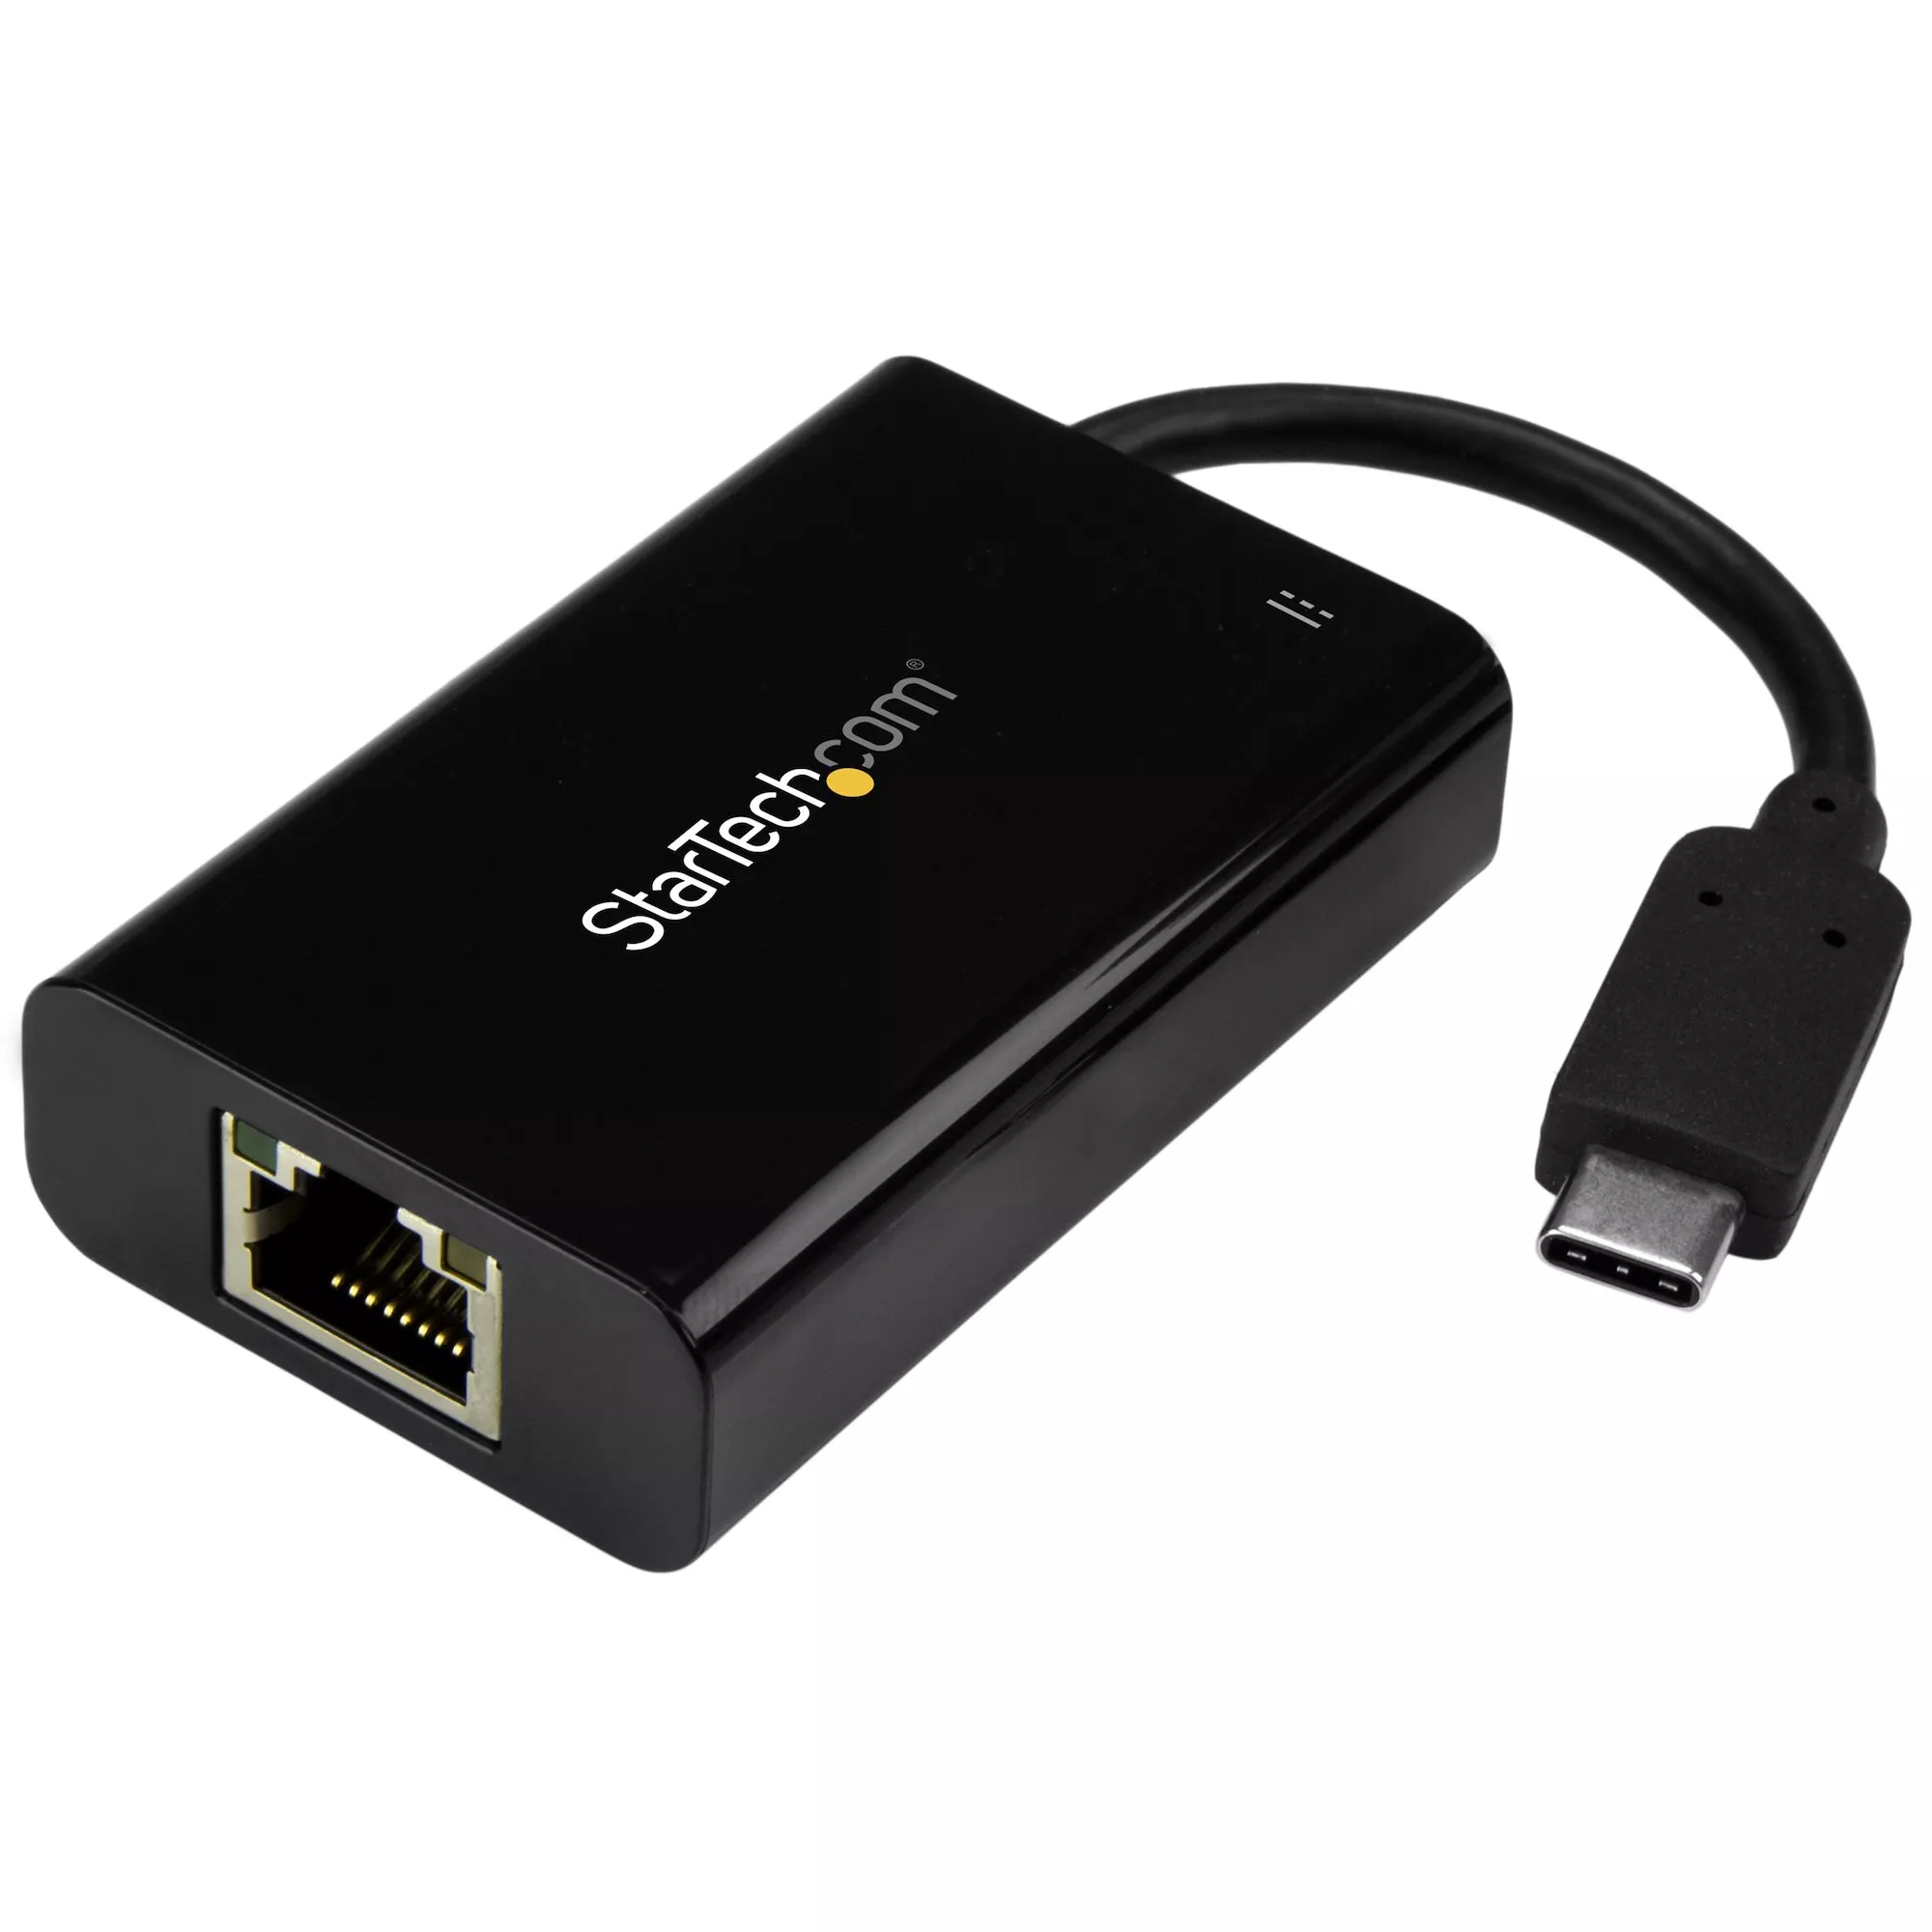 Achat StarTech.com Adaptateur/Convertisseur USB C vers Gigabit et autres produits de la marque StarTech.com